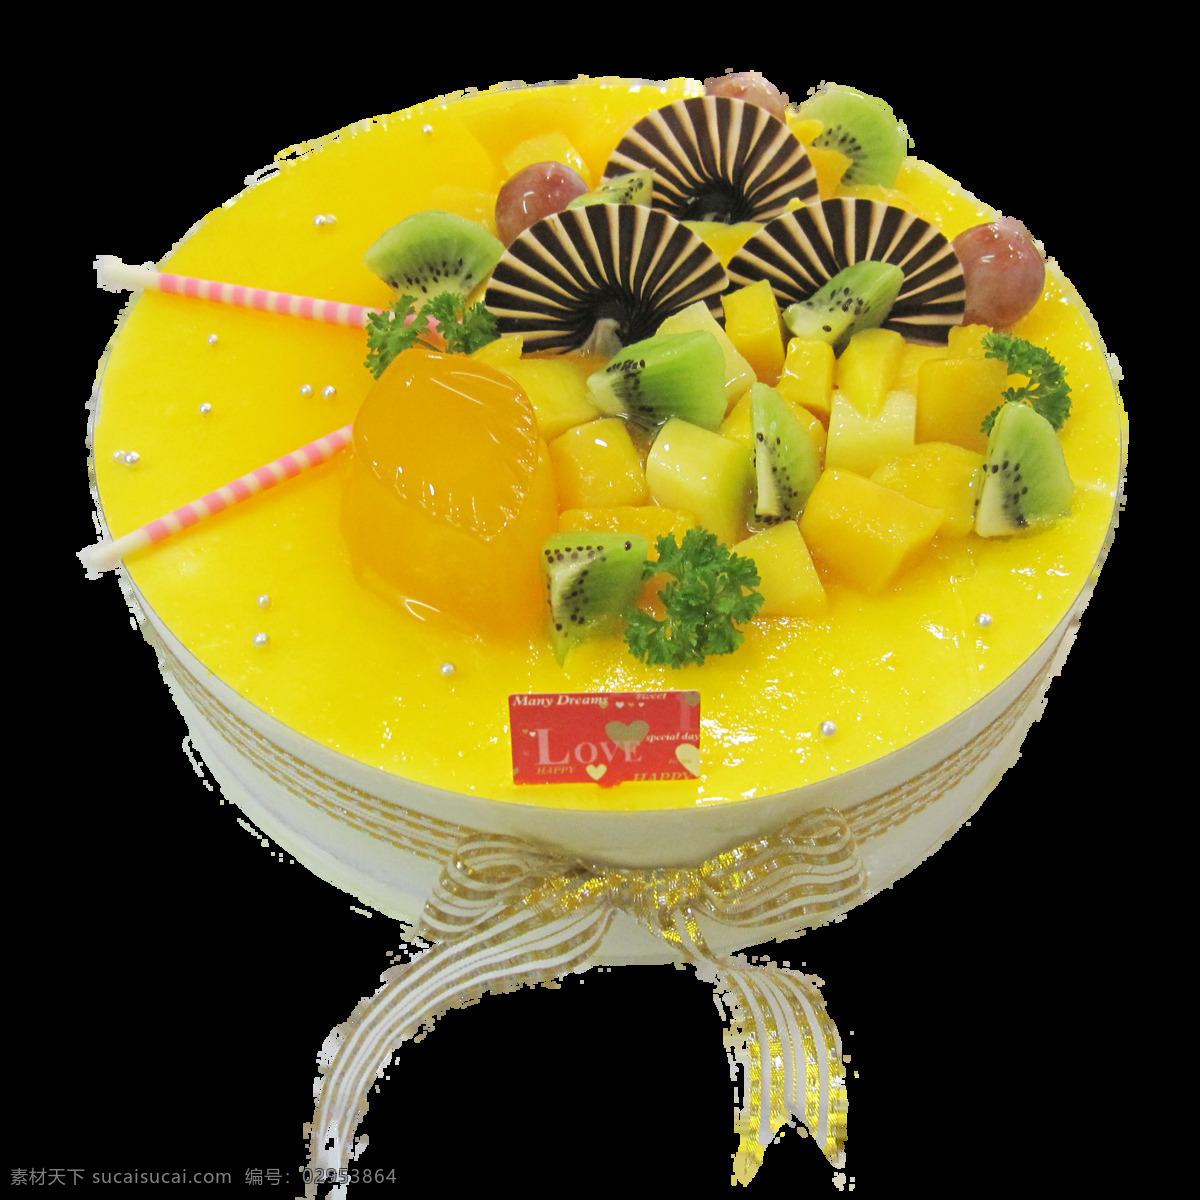 黄色 奶油 水果 蛋糕 蛋糕元素 蛋糕装饰 花朵蛋糕 黄色蛋糕 水果蛋糕